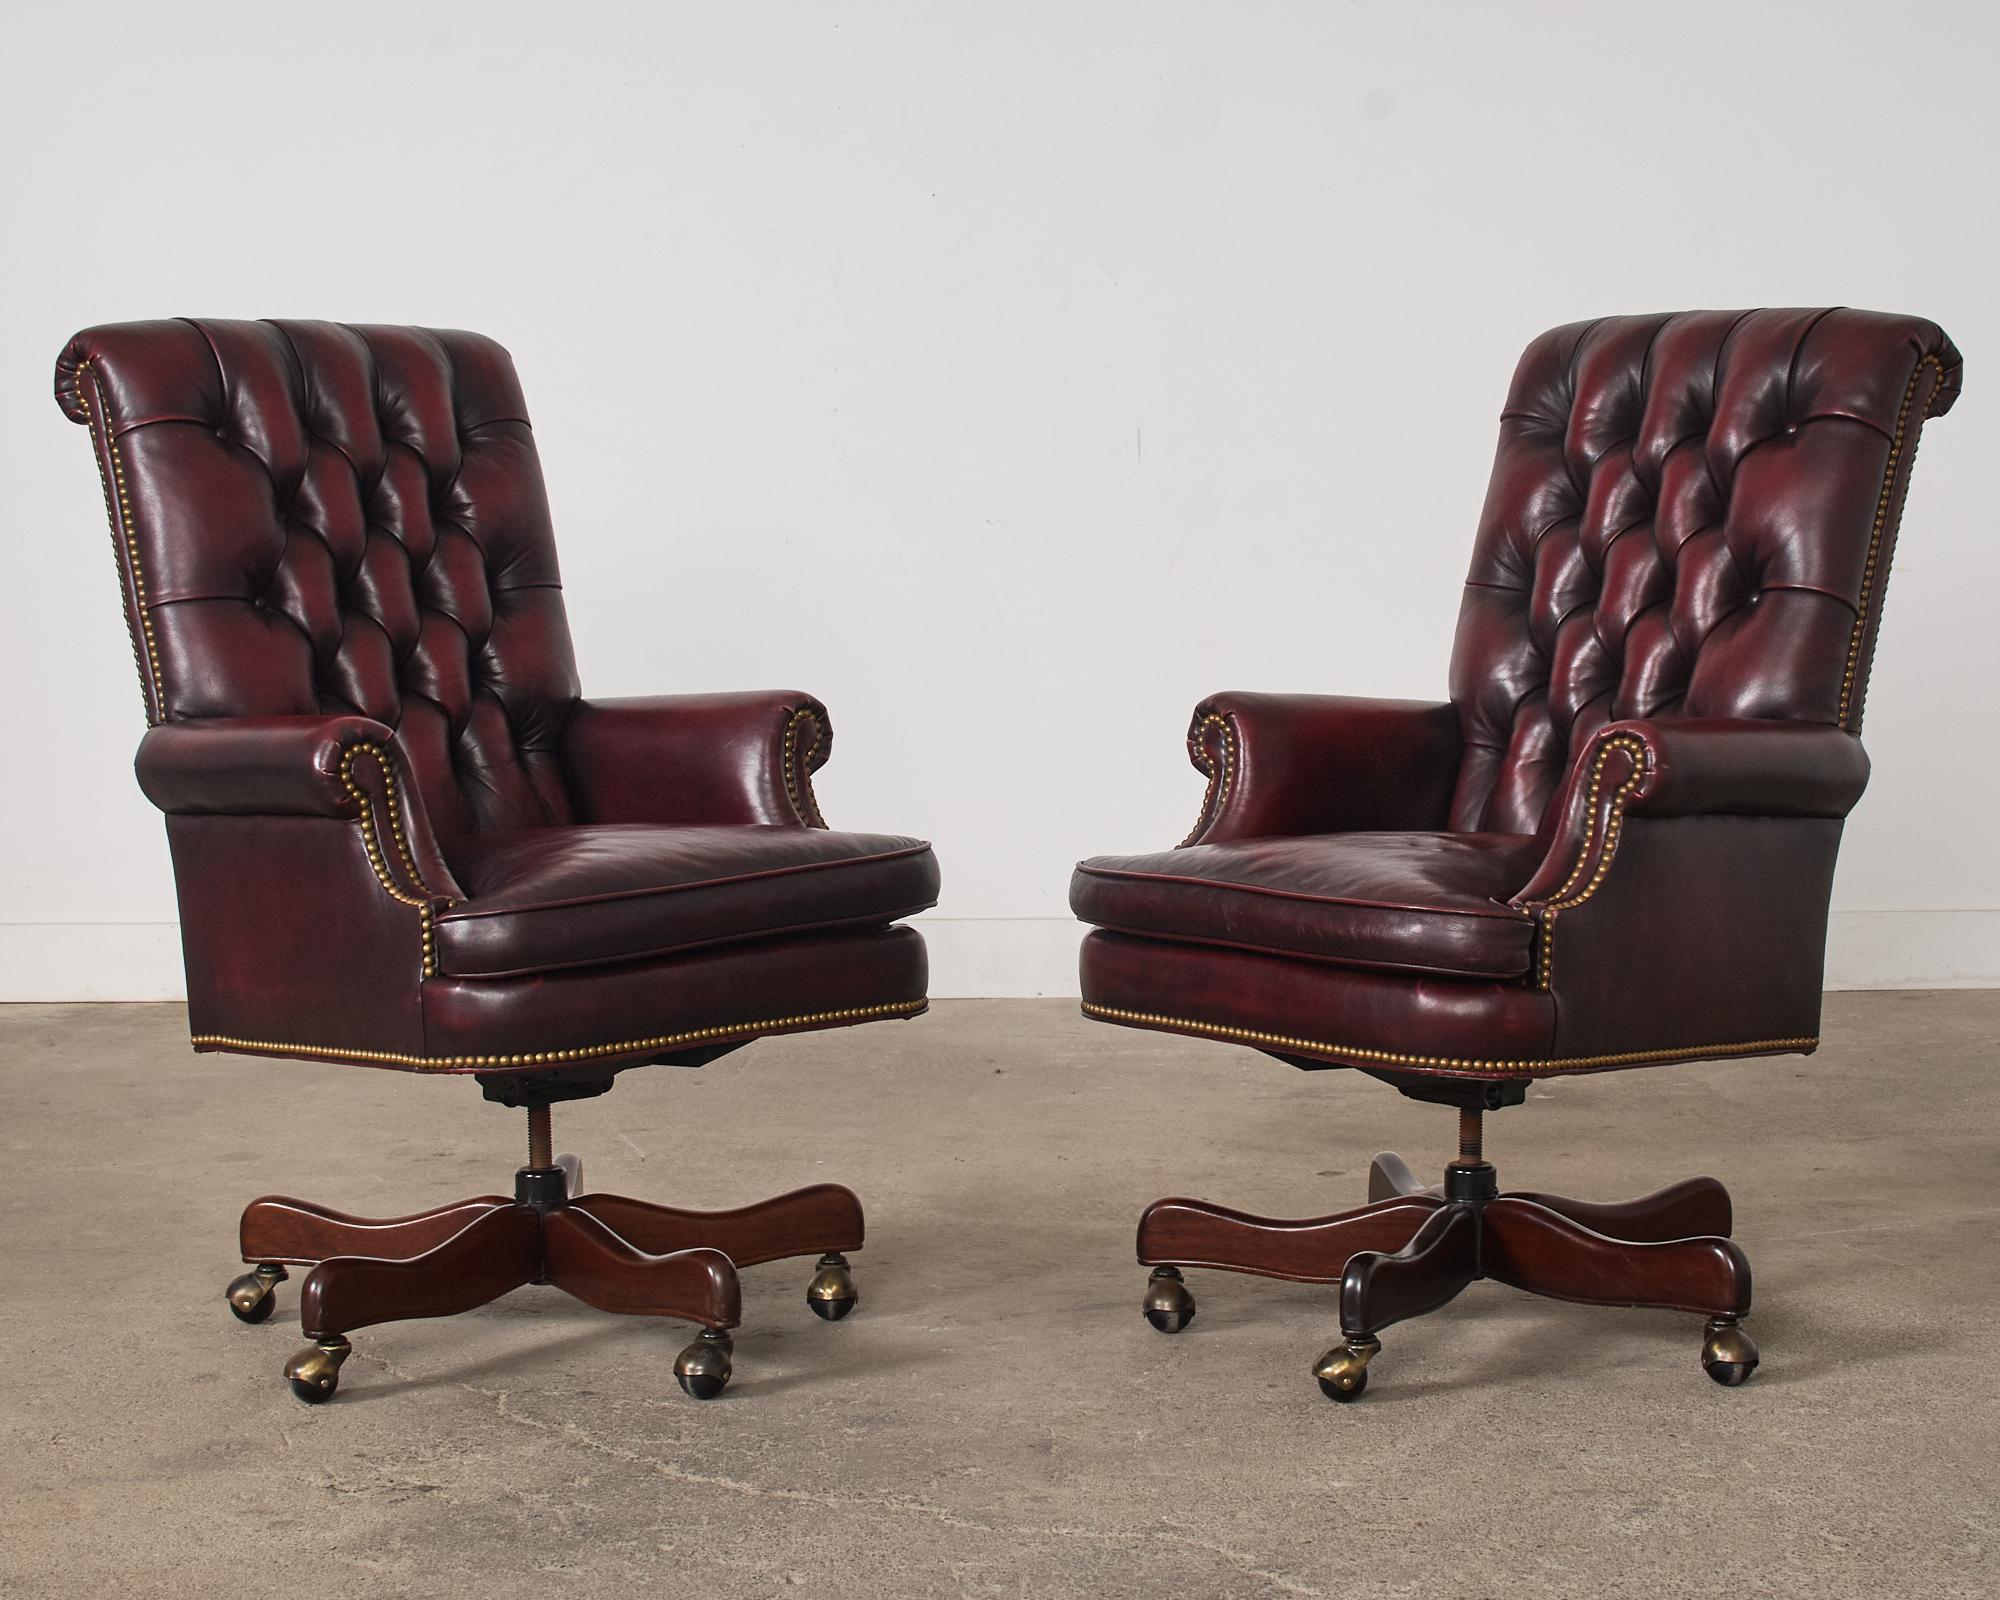 Klassisches Paar Chesterfield Cordovan Bürodrehsessel, hergestellt im englischen georgianischen Geschmack. Die Stühle haben eine ledergetuftete Sitzfläche, eine geschwungene Rückenlehne im Regency-Stil und englische, gerollte Armlehnen. Die